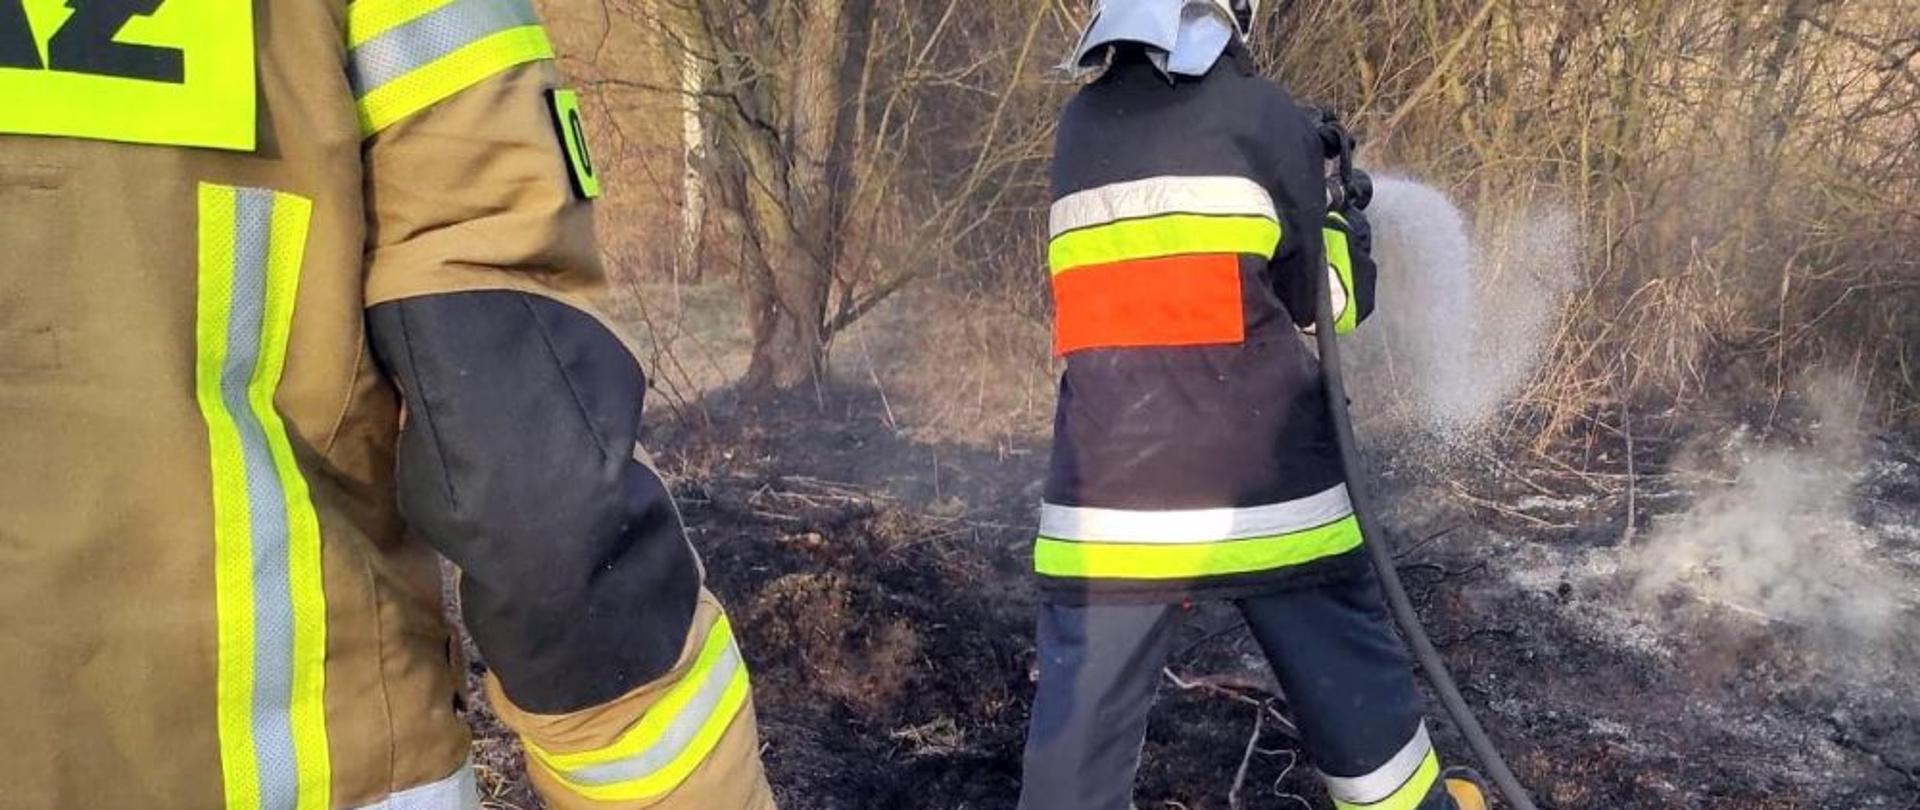 Zdjęcie przedstawia dwóch strażaków gaszących nieużytki.